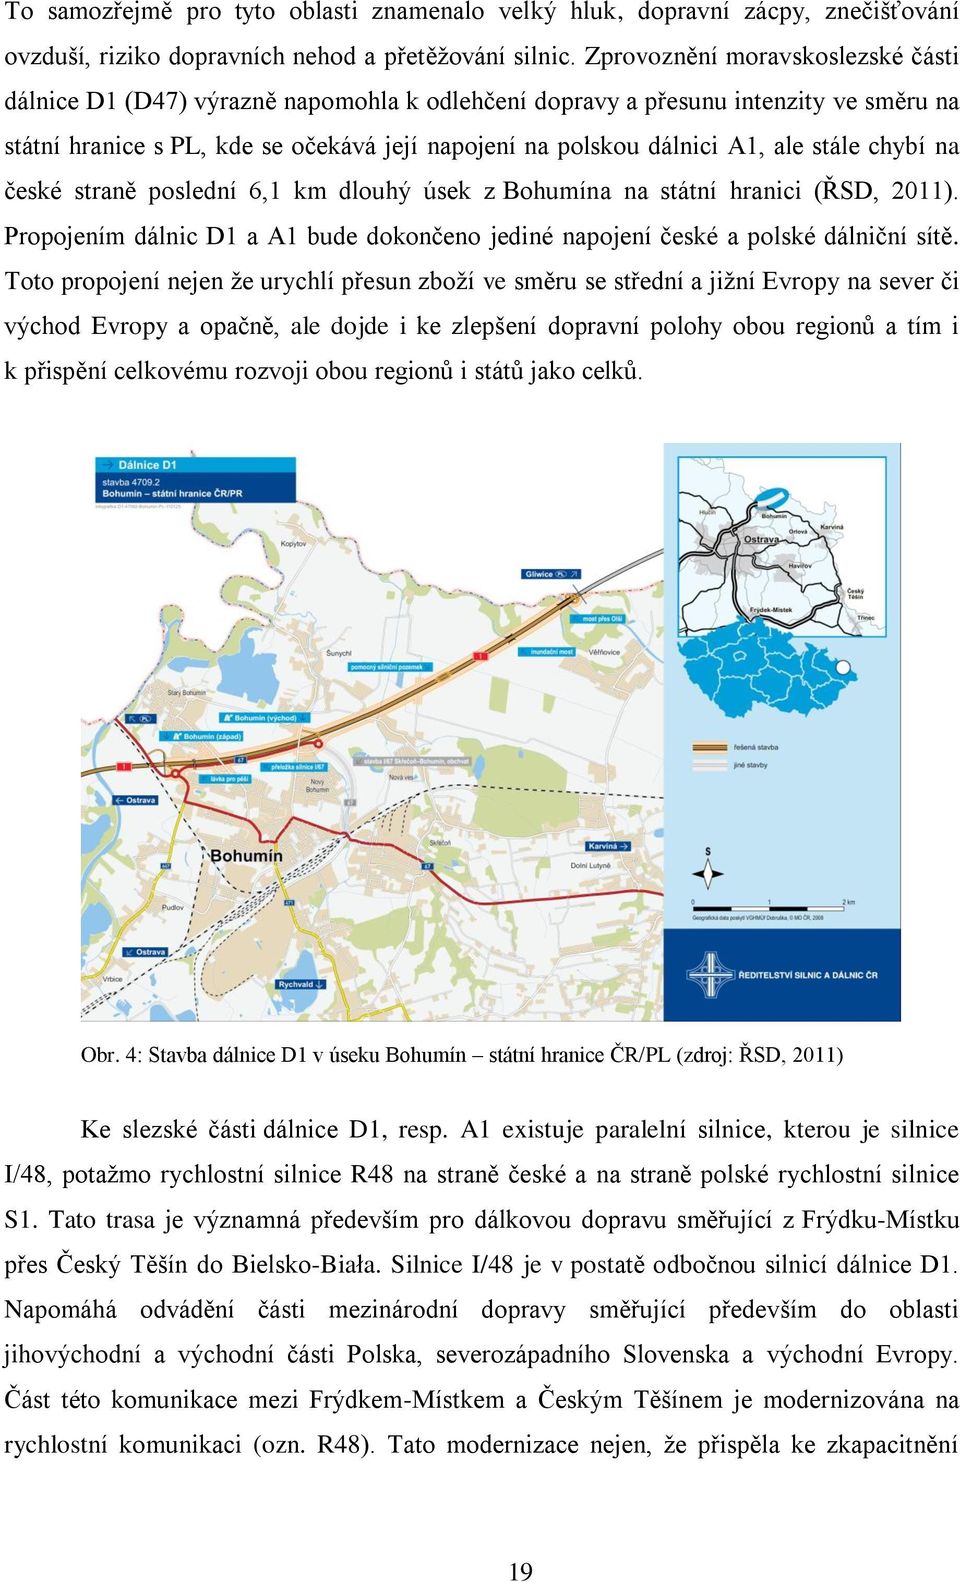 stále chybí na české straně poslední 6,1 km dlouhý úsek z Bohumína na státní hranici (ŘSD, 2011). Propojením dálnic D1 a A1 bude dokončeno jediné napojení české a polské dálniční sítě.